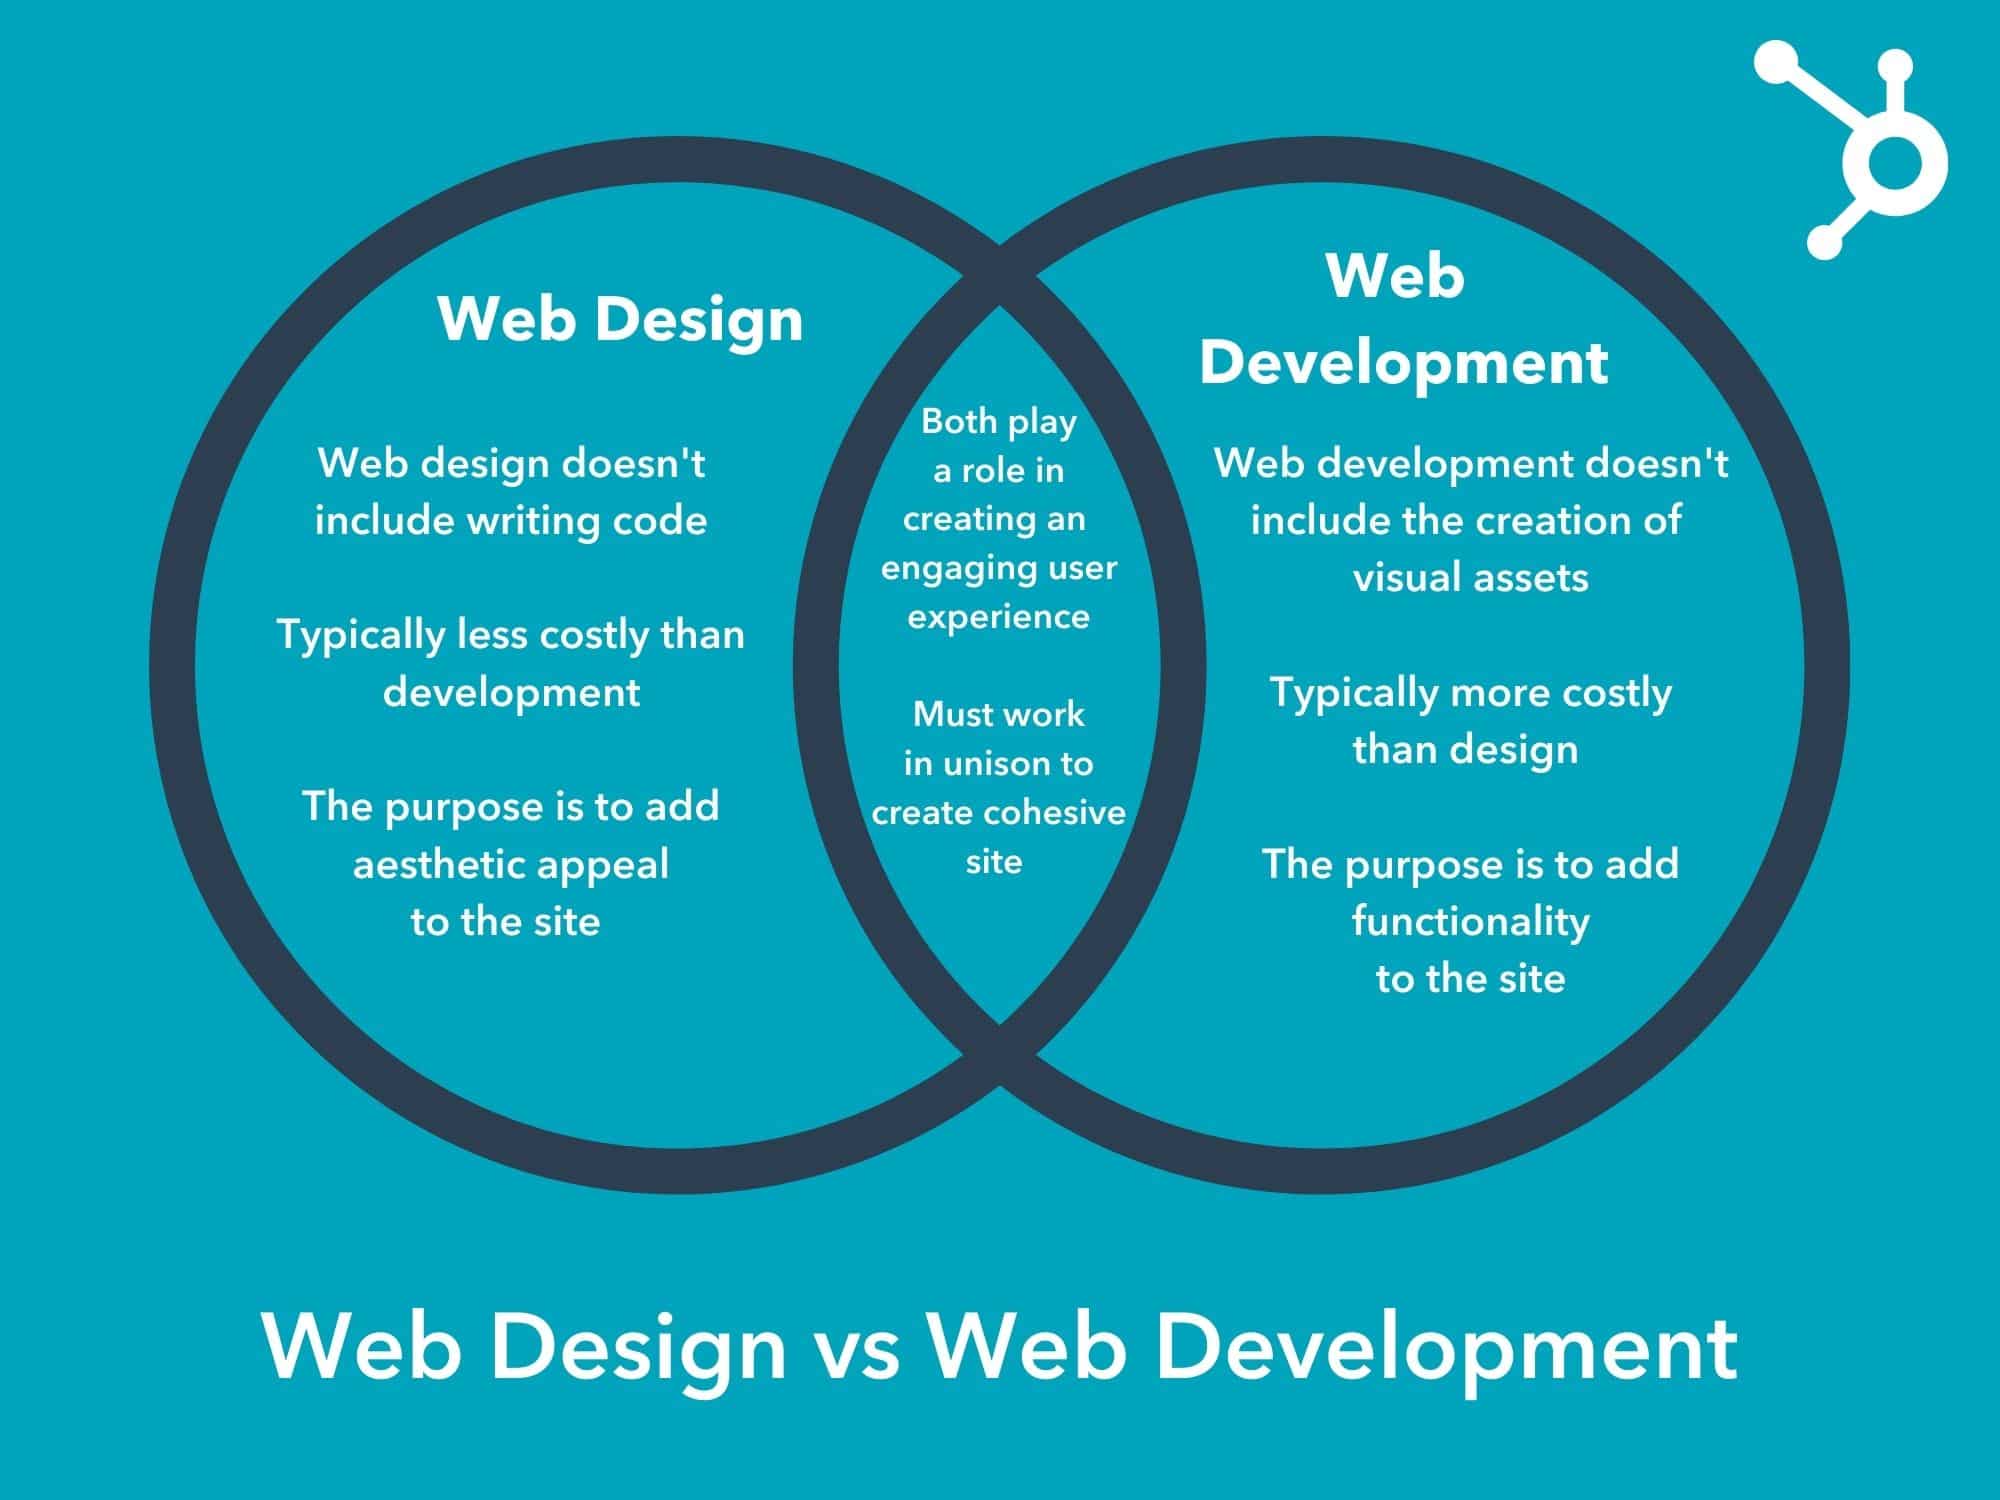 Web Design vs Sviluppo Web Diagramma di Venn